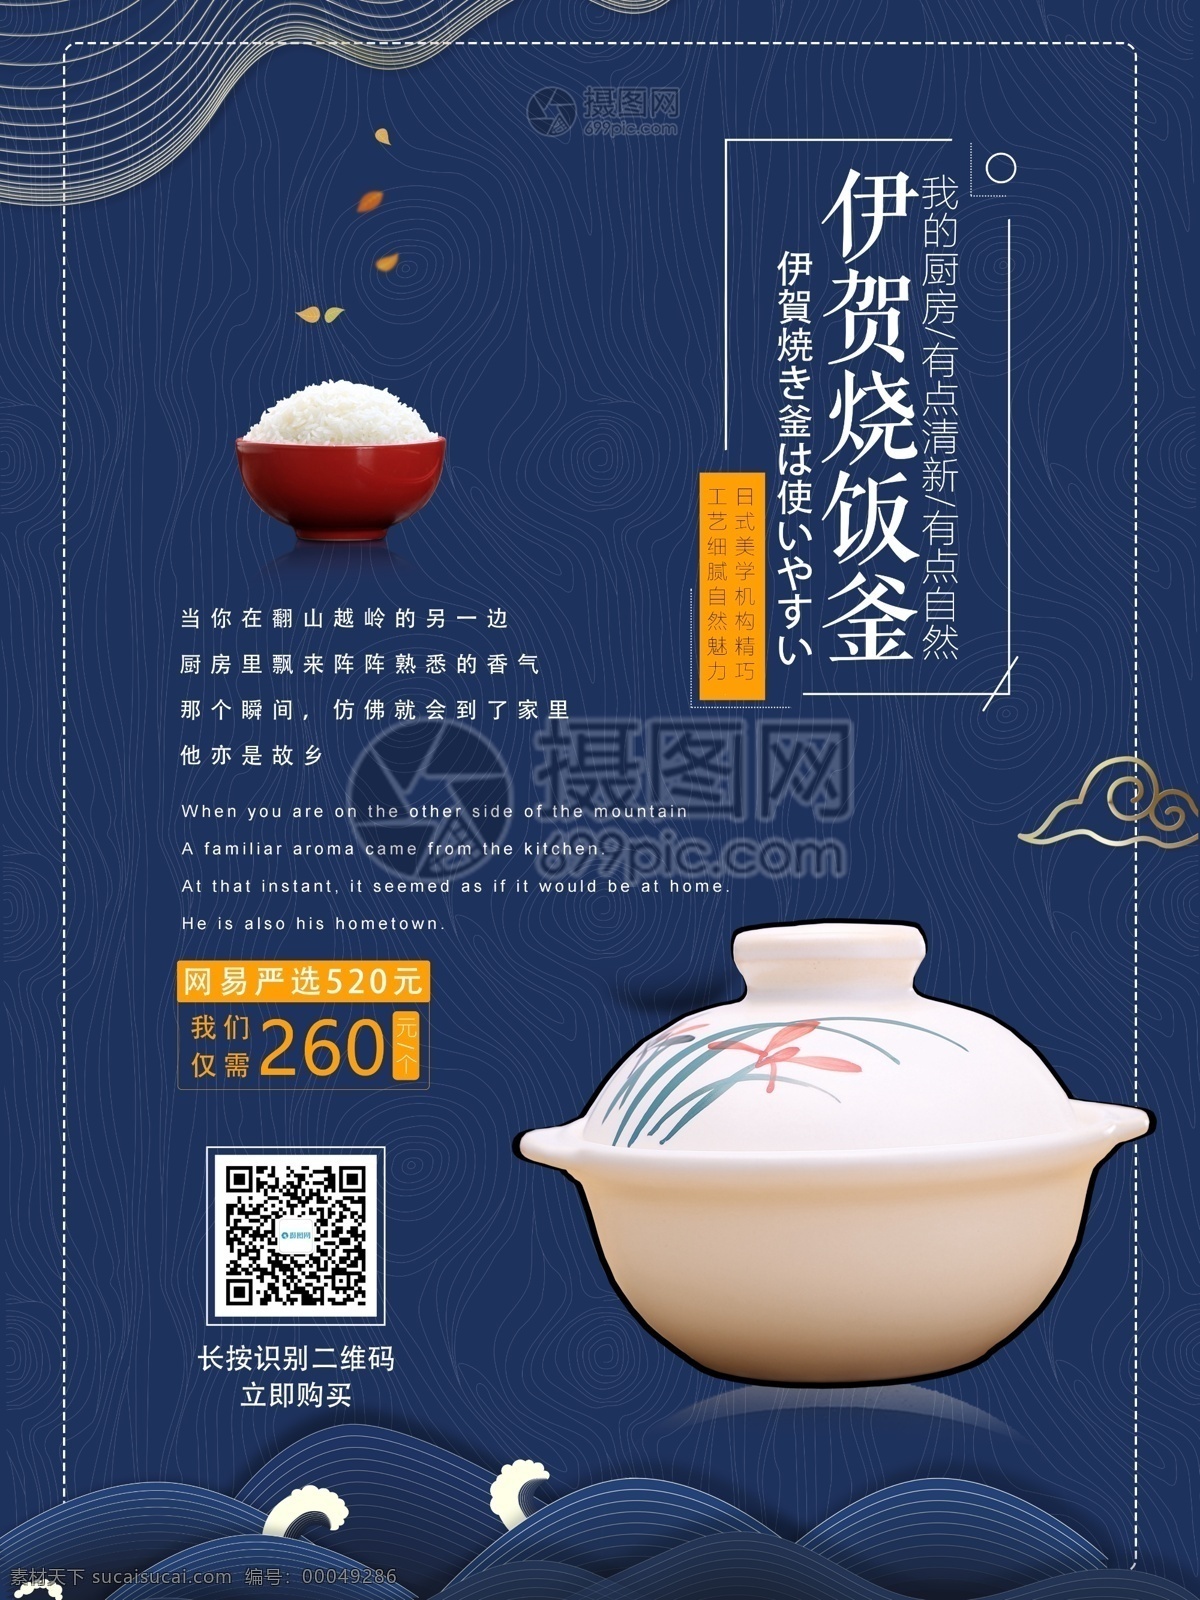 蓝色 系列 高档 锅 厨房用具 海报 锅碗 厨房用品 创意 厨具 陶瓷